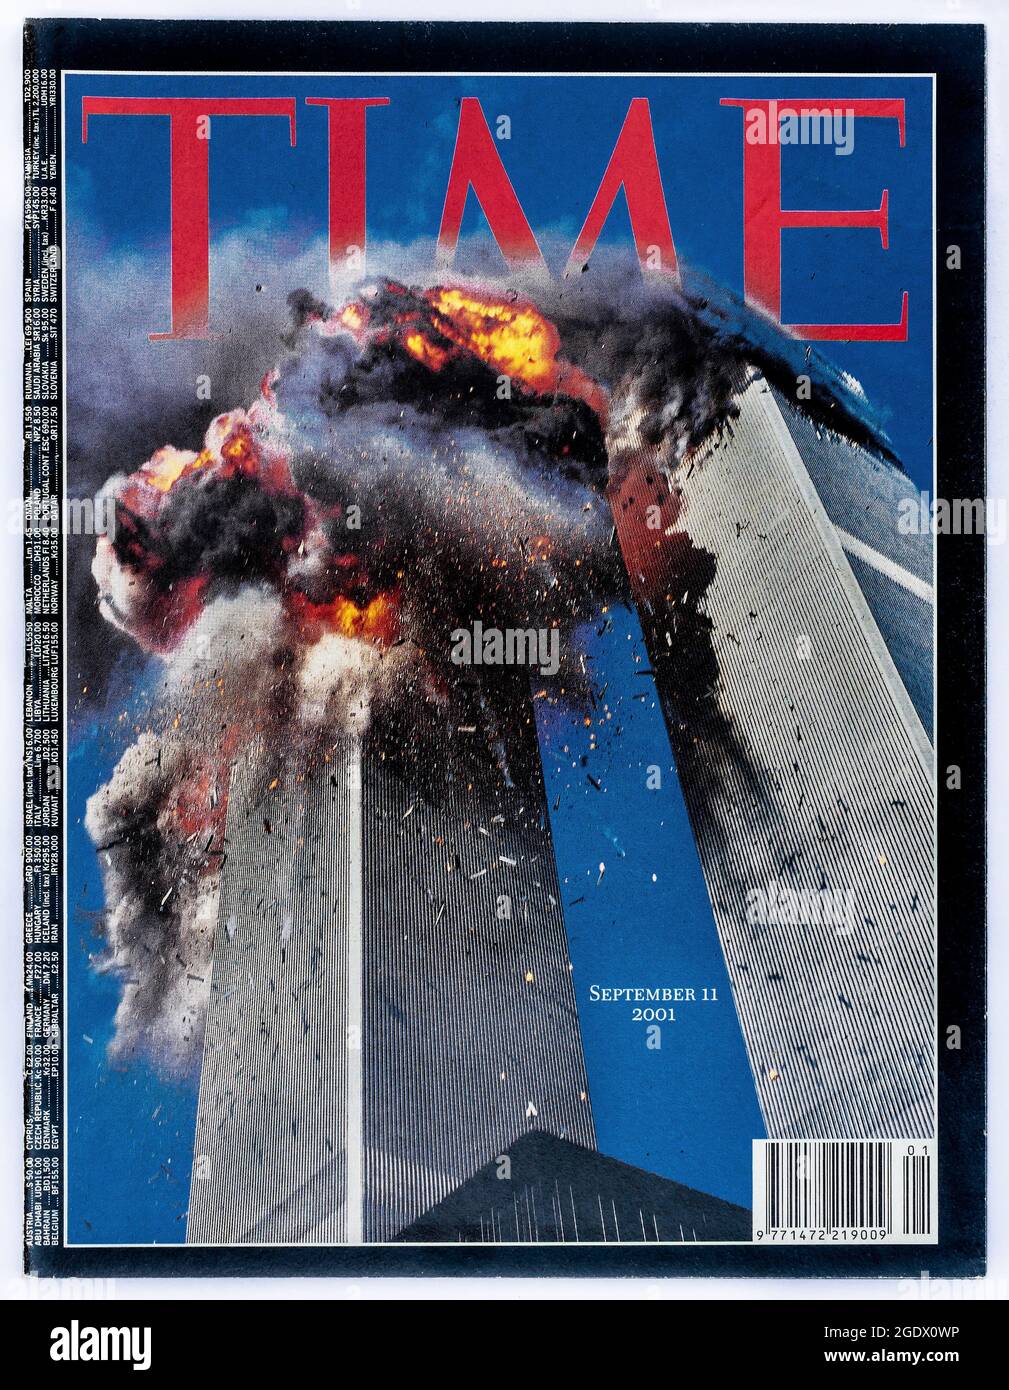 Copertina della rivista americana 'Time' che riporta l'attacco terroristico del 9/11 al World Trade Center di New York, USA, il 11 settembre 2001. Foto Stock